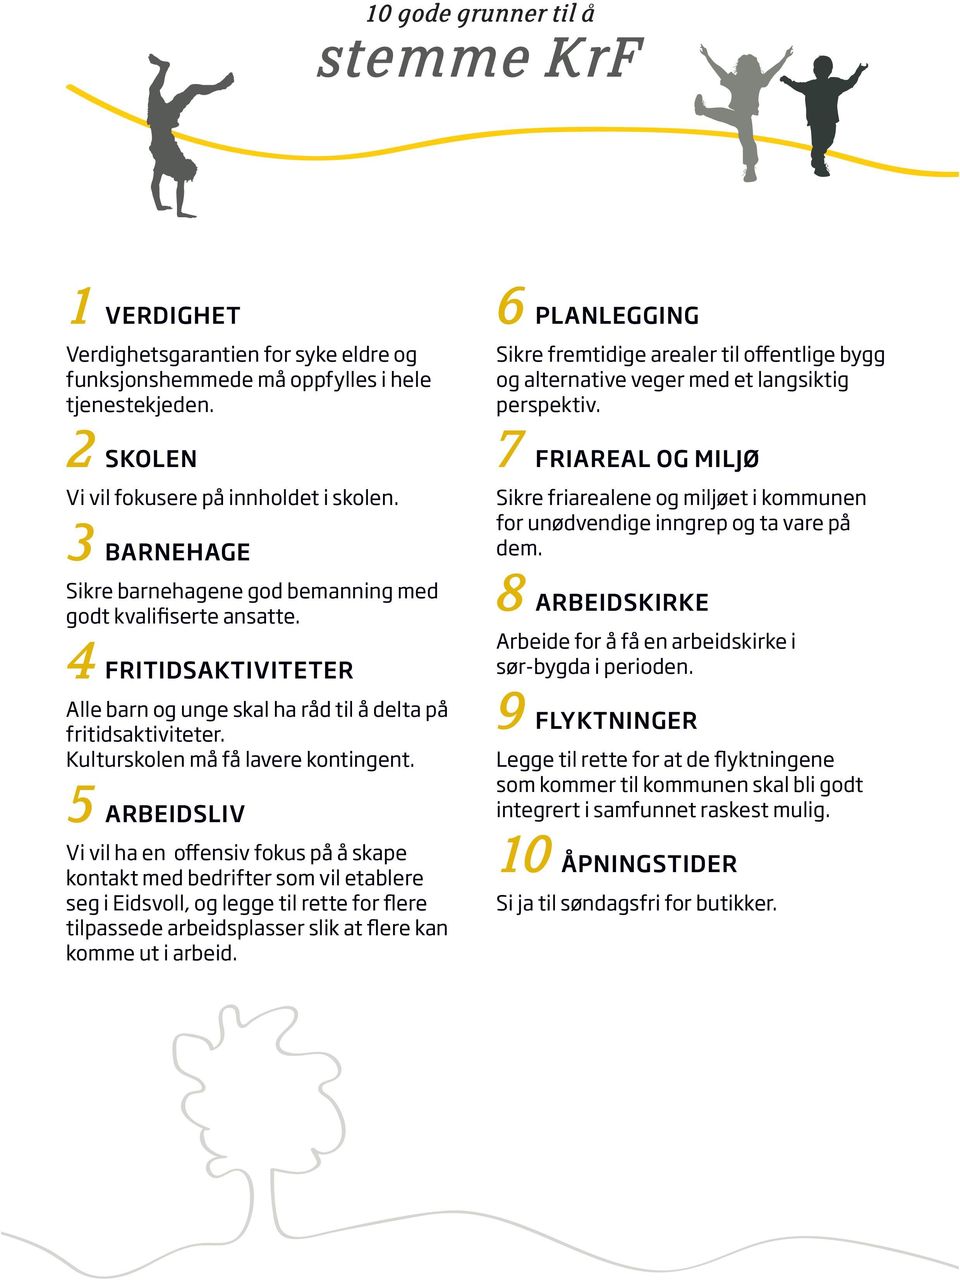 5 ARBEIDSLIV Vi vil ha en offensiv fokus på å skape kontakt med bedrifter som vil etablere seg i Eidsvoll, og legge til rette for flere tilpassede arbeidsplasser slik at flere kan komme ut i arbeid.